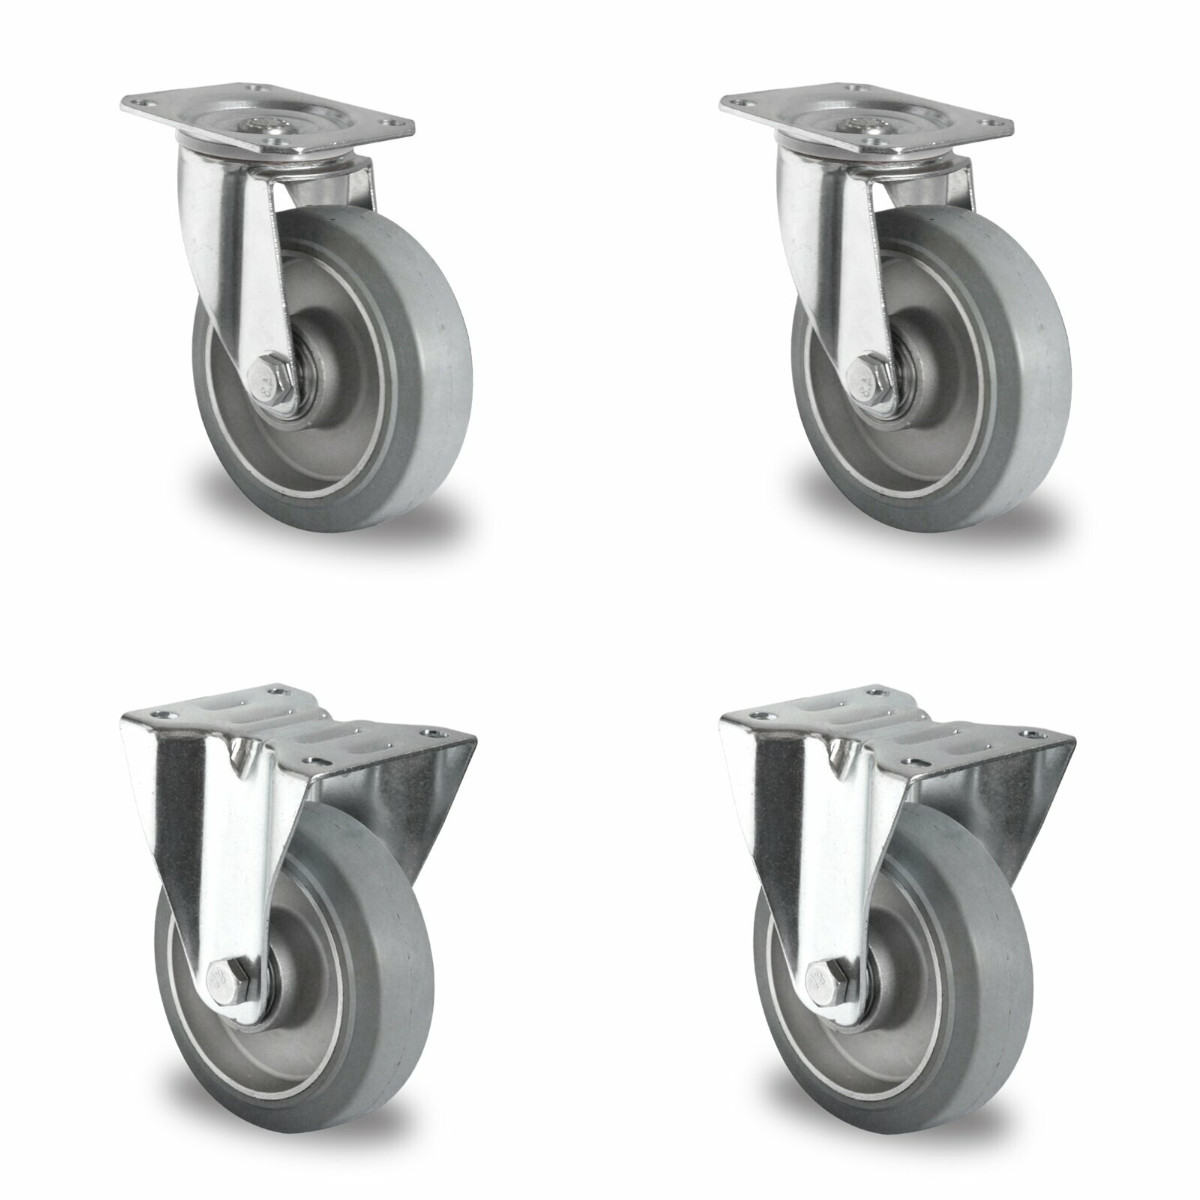 2 Lenkrollen und 2 Bockrollen für Rollbehälter im Durchmesser 125 mm mit Lauffläche aus grauem Elastik und Aluminium-Felge